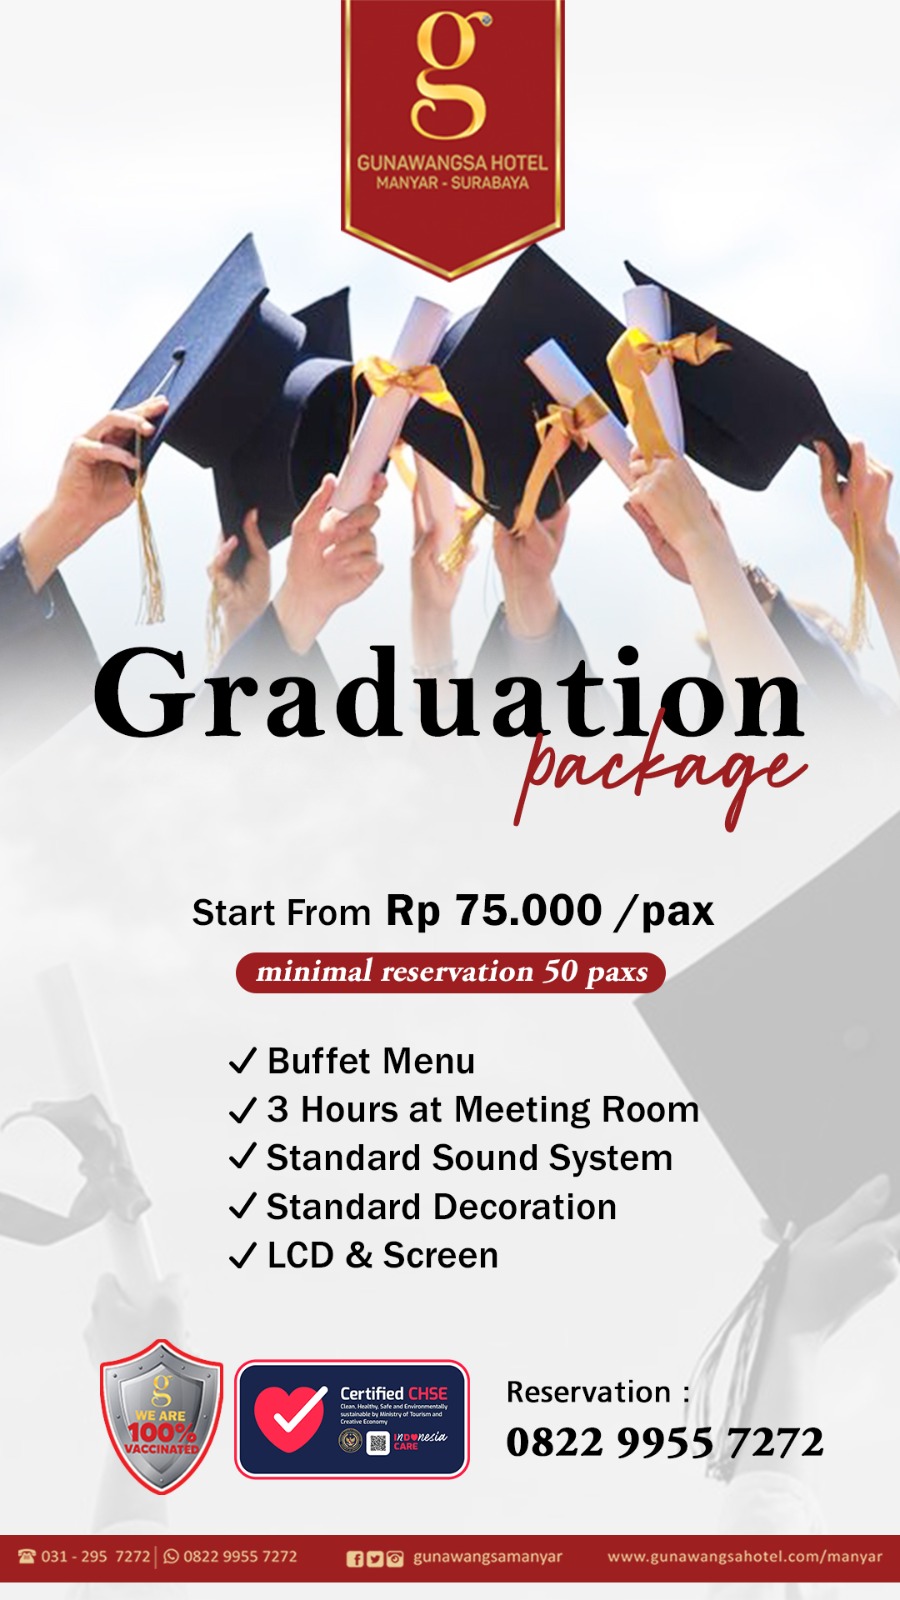 Graduation Package - Gunawangsa Hotel Manyar Surabaya